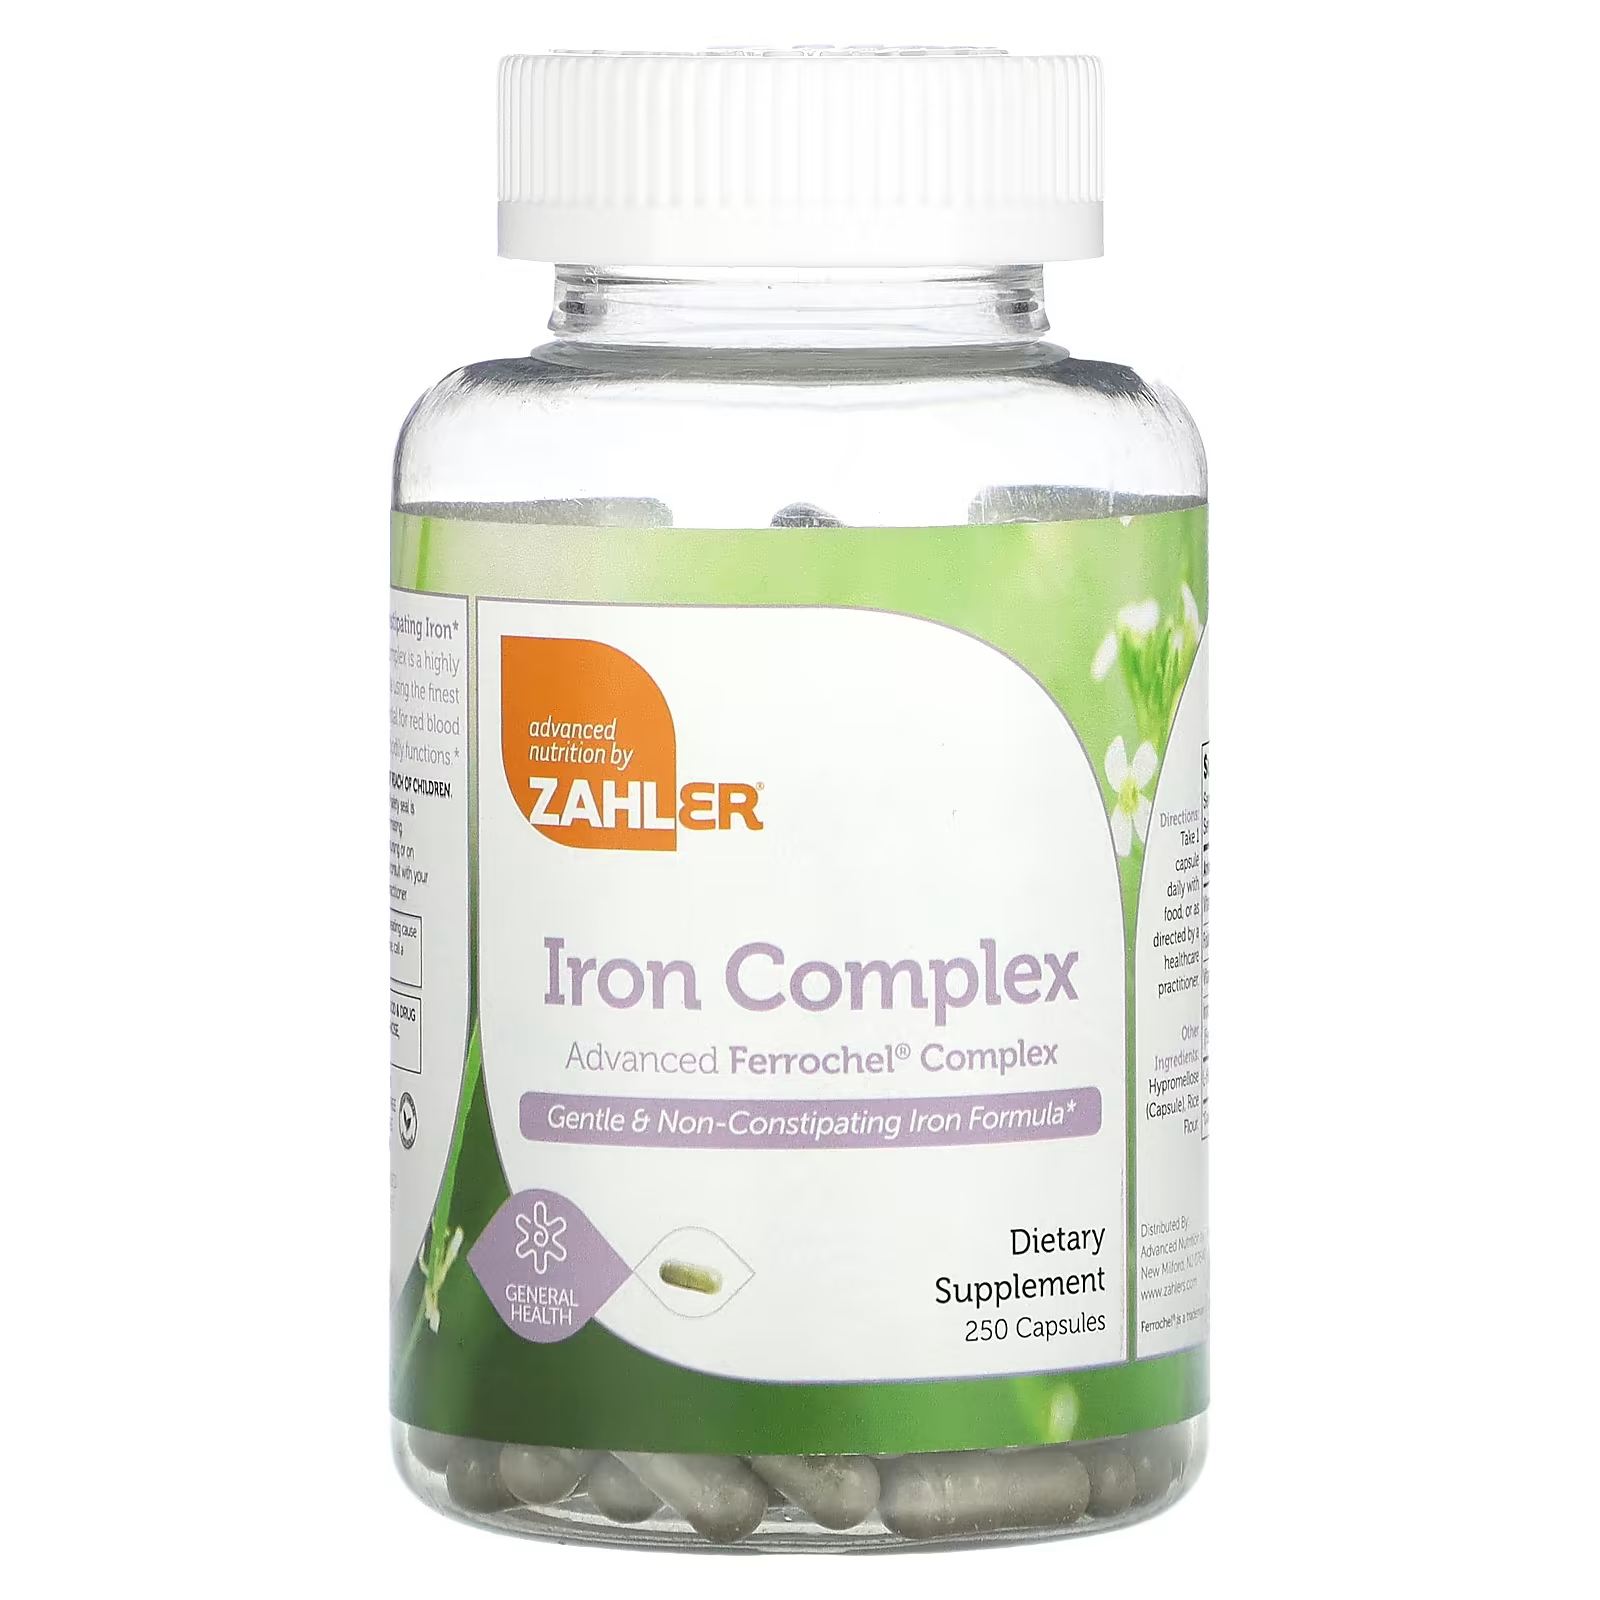 Zahler Iron Complex Мягкая формула железа, не вызывающая запоров, 250 капсул комплекс железа zahler 100 капсул